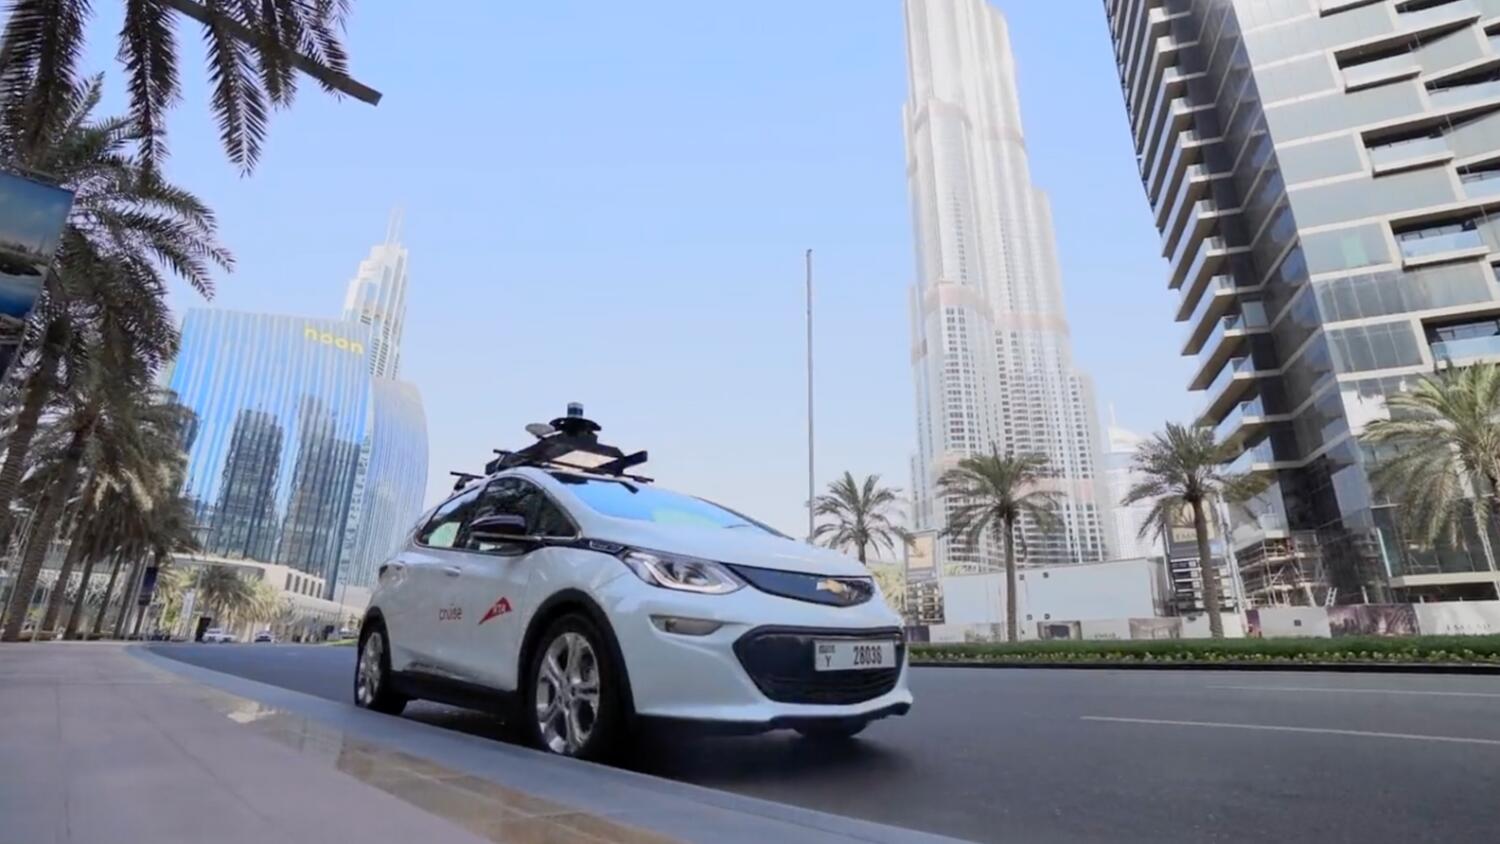 Driverless taxis in Dubai: How Cruise autonomous vehicles work - News | Khaleej Times